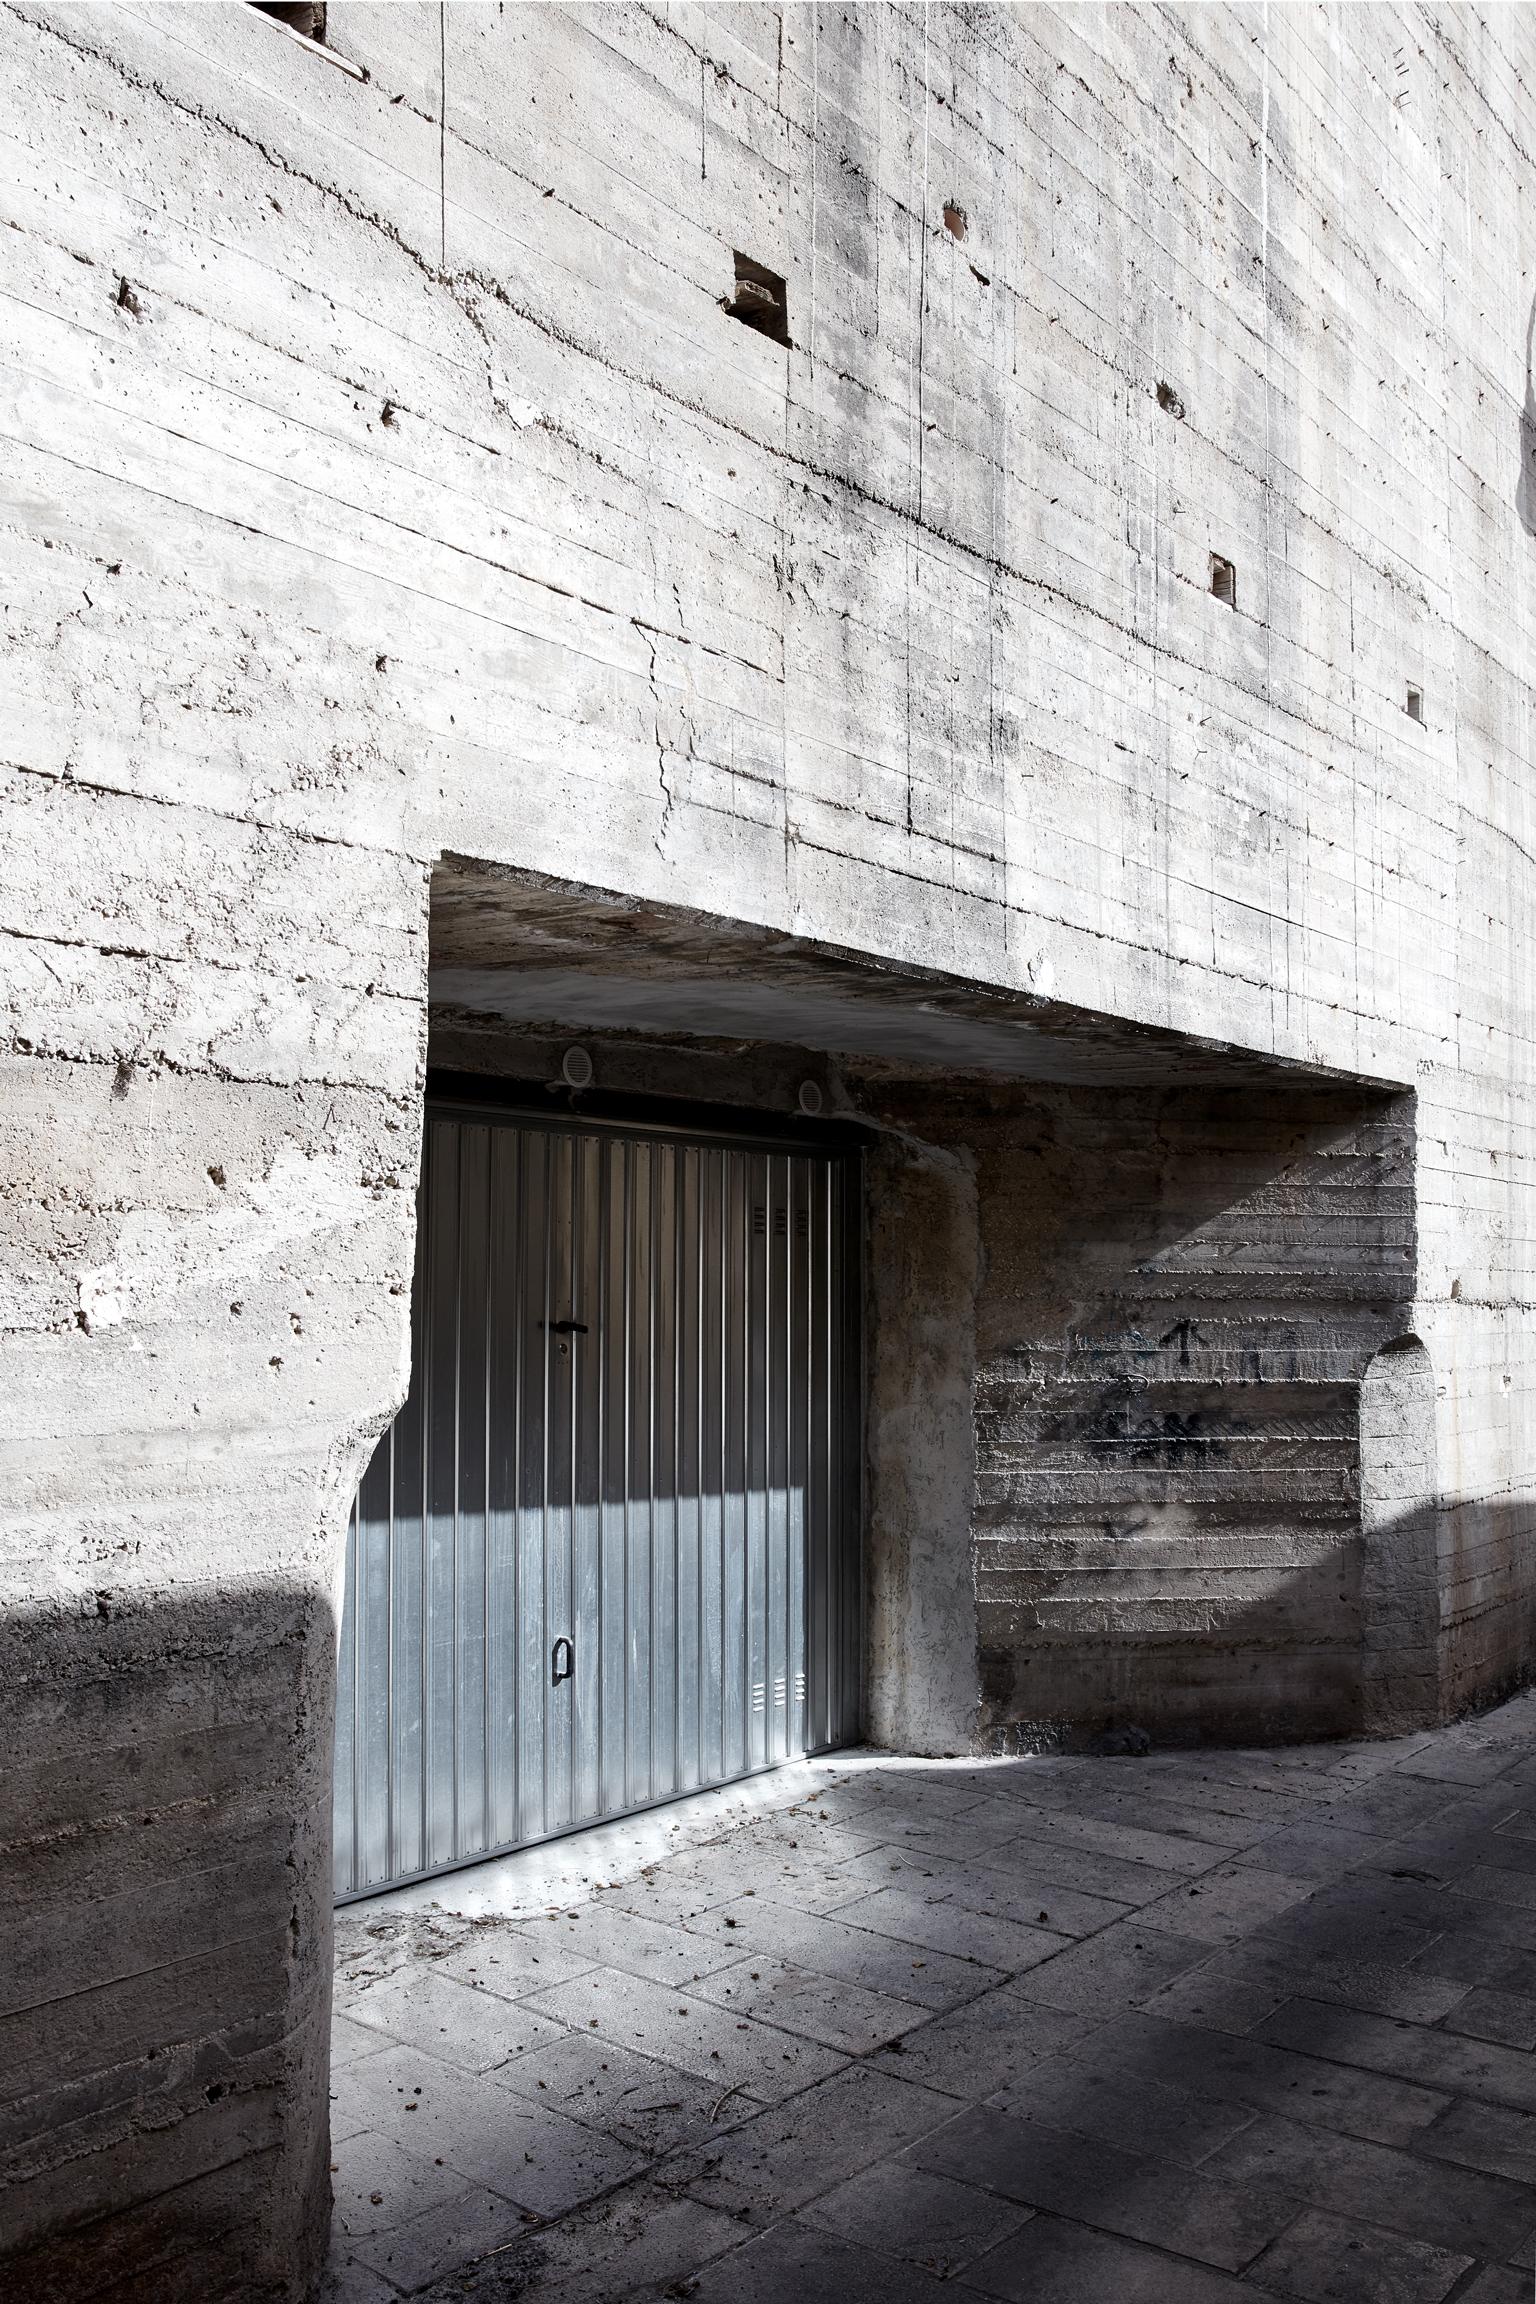 Modica – Großformatfotografie der brutalistischen Architektur – Photograph von Frank Schott